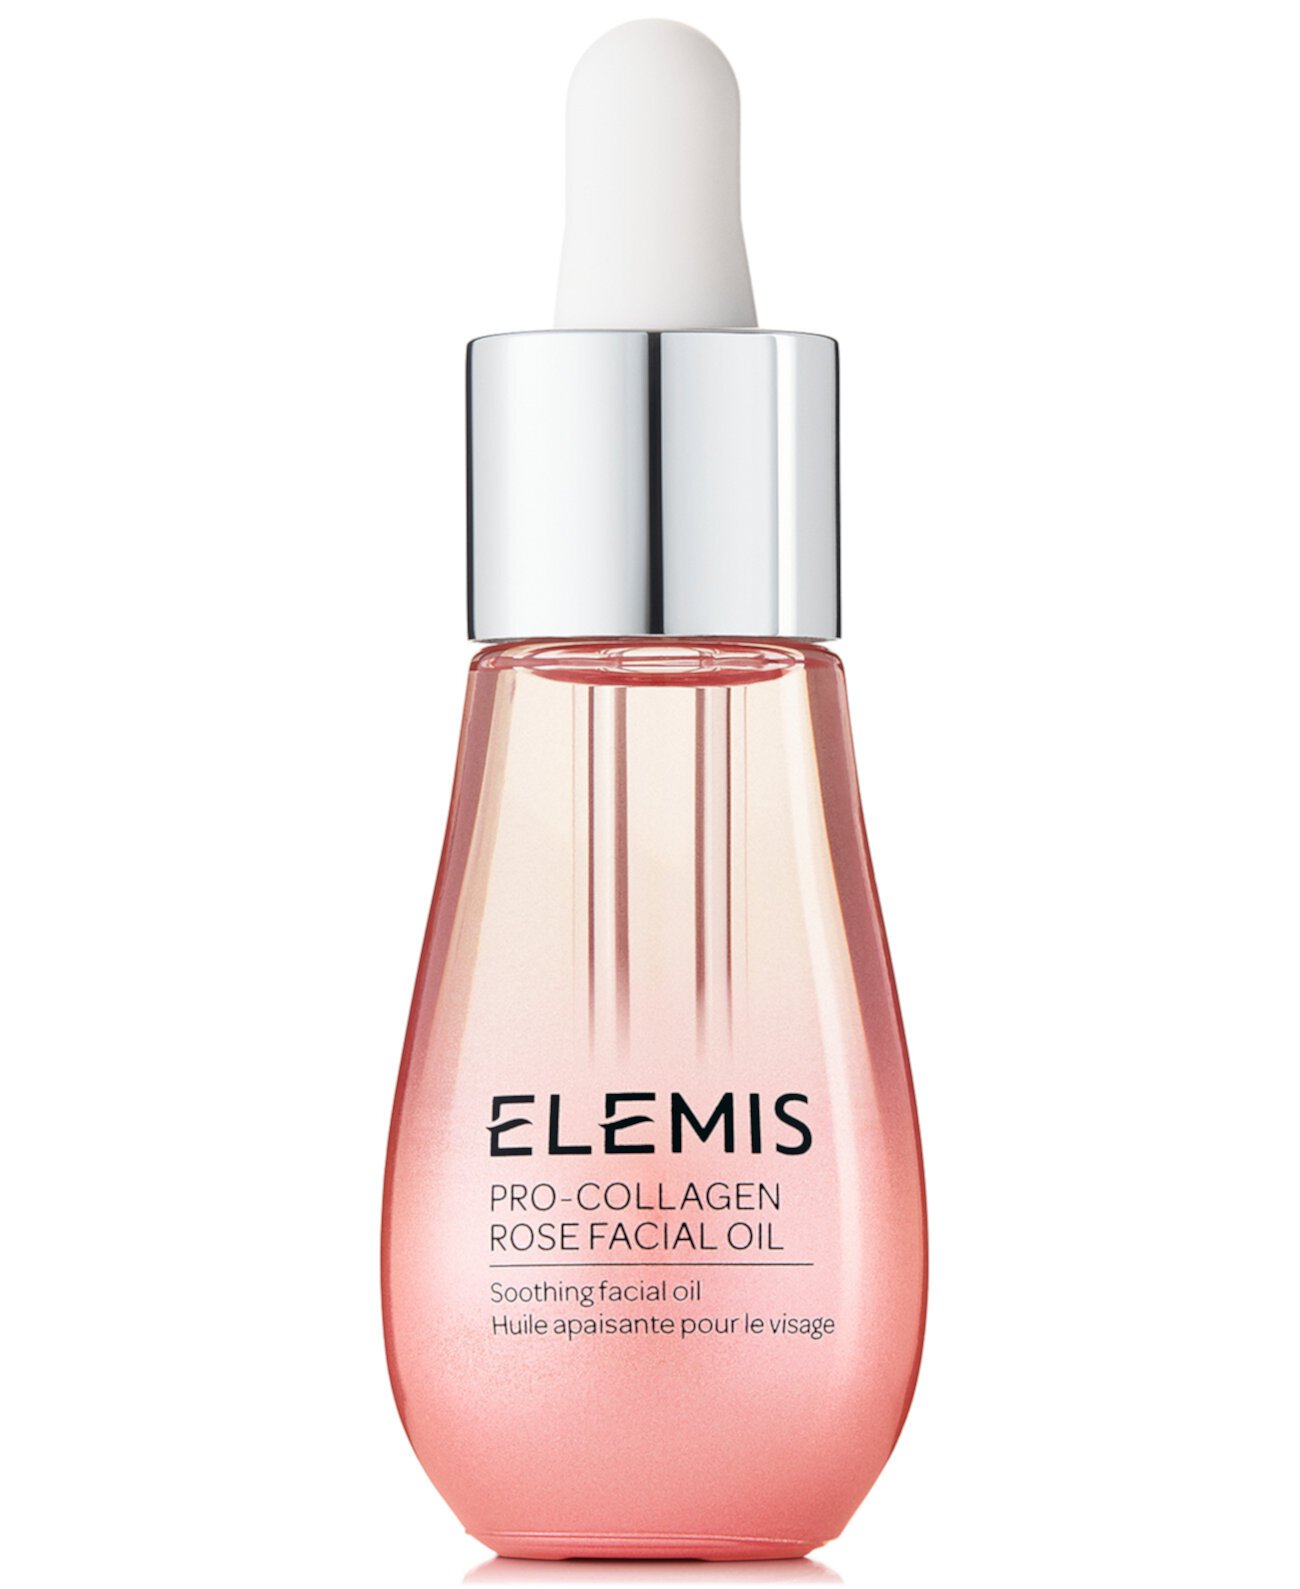 Pro-Collagen Rose Facial Oil, 1,7 унции. Elemis